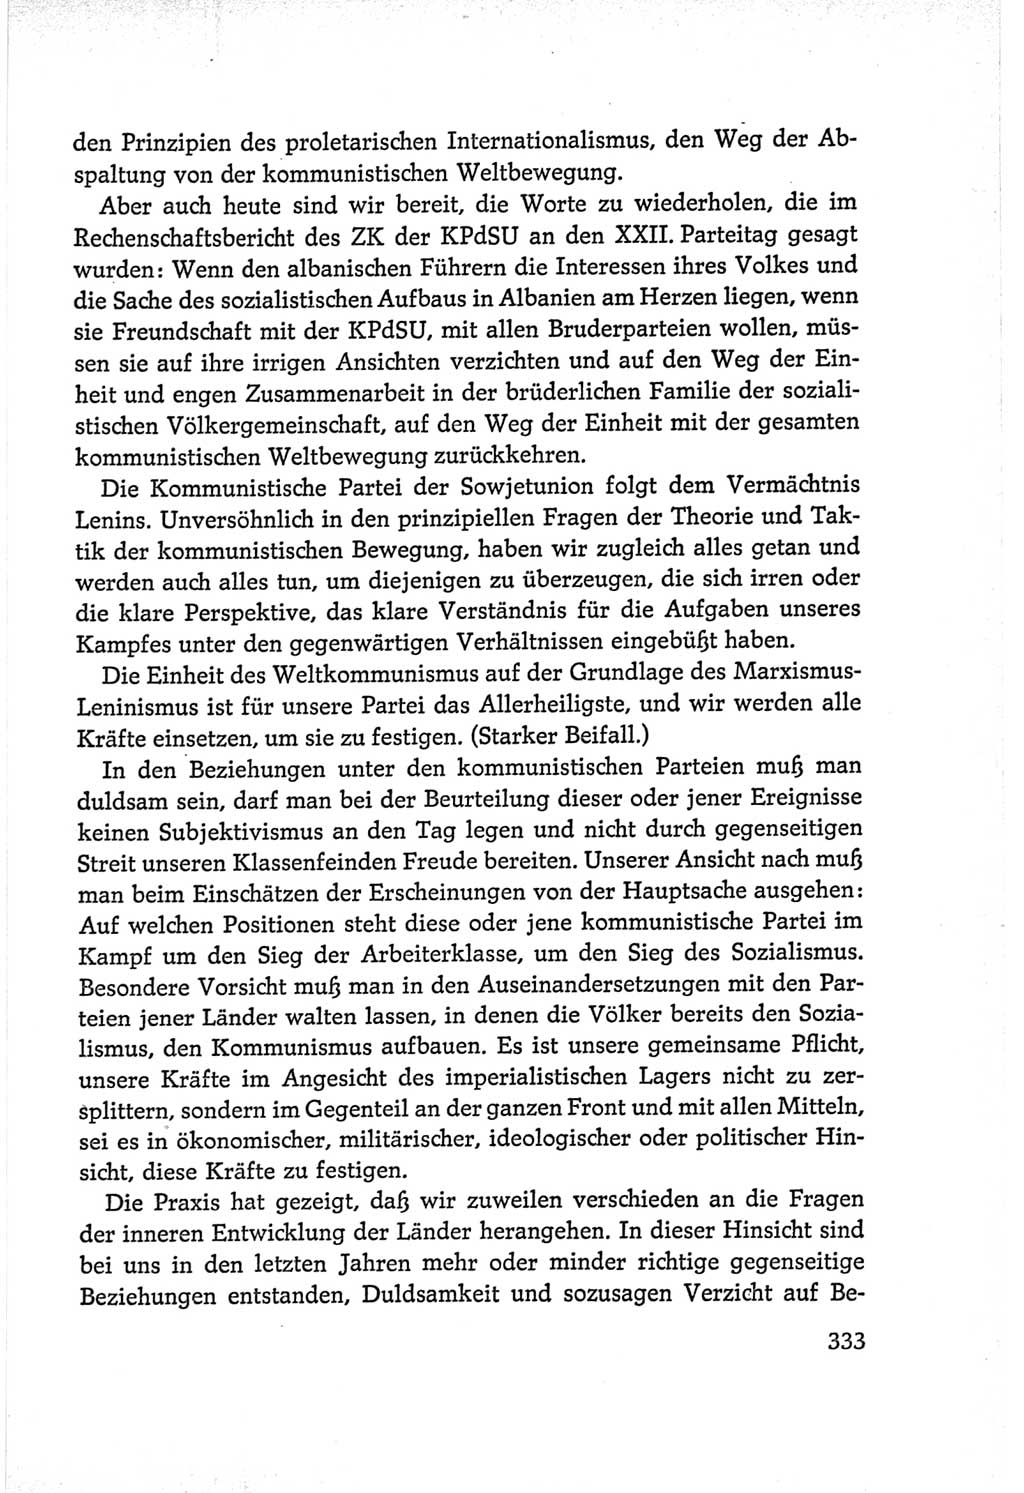 Protokoll der Verhandlungen des Ⅵ. Parteitages der Sozialistischen Einheitspartei Deutschlands (SED) [Deutsche Demokratische Republik (DDR)] 1963, Band Ⅰ, Seite 333 (Prot. Verh. Ⅵ. PT SED DDR 1963, Bd. Ⅰ, S. 333)